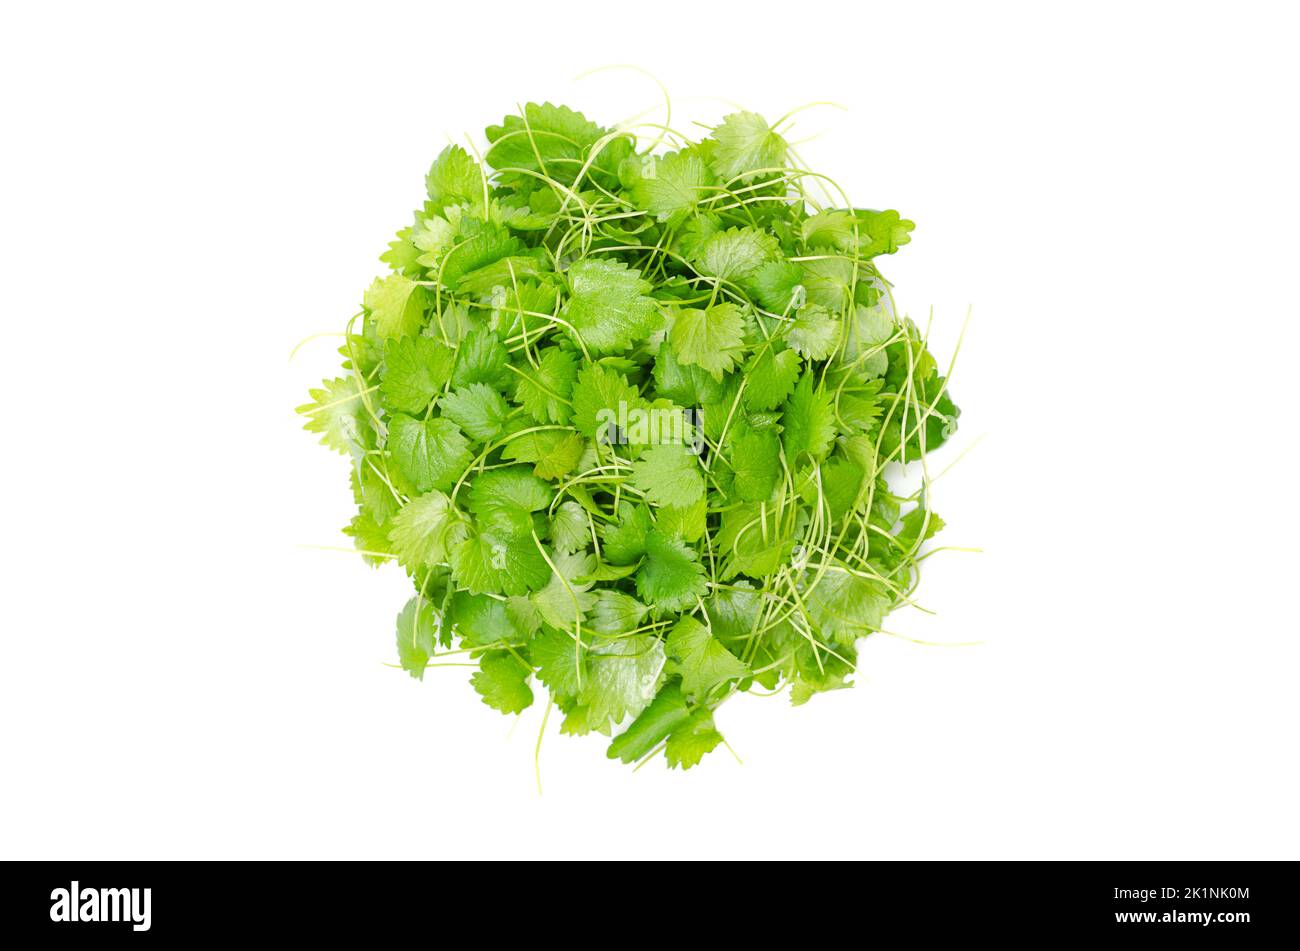 Anise microgreens, cerchio dall'alto. Germogli di Pimpinella anisum, detto anche anice, un'erba dal sapore che ricorda la liquirizia. Foto Stock